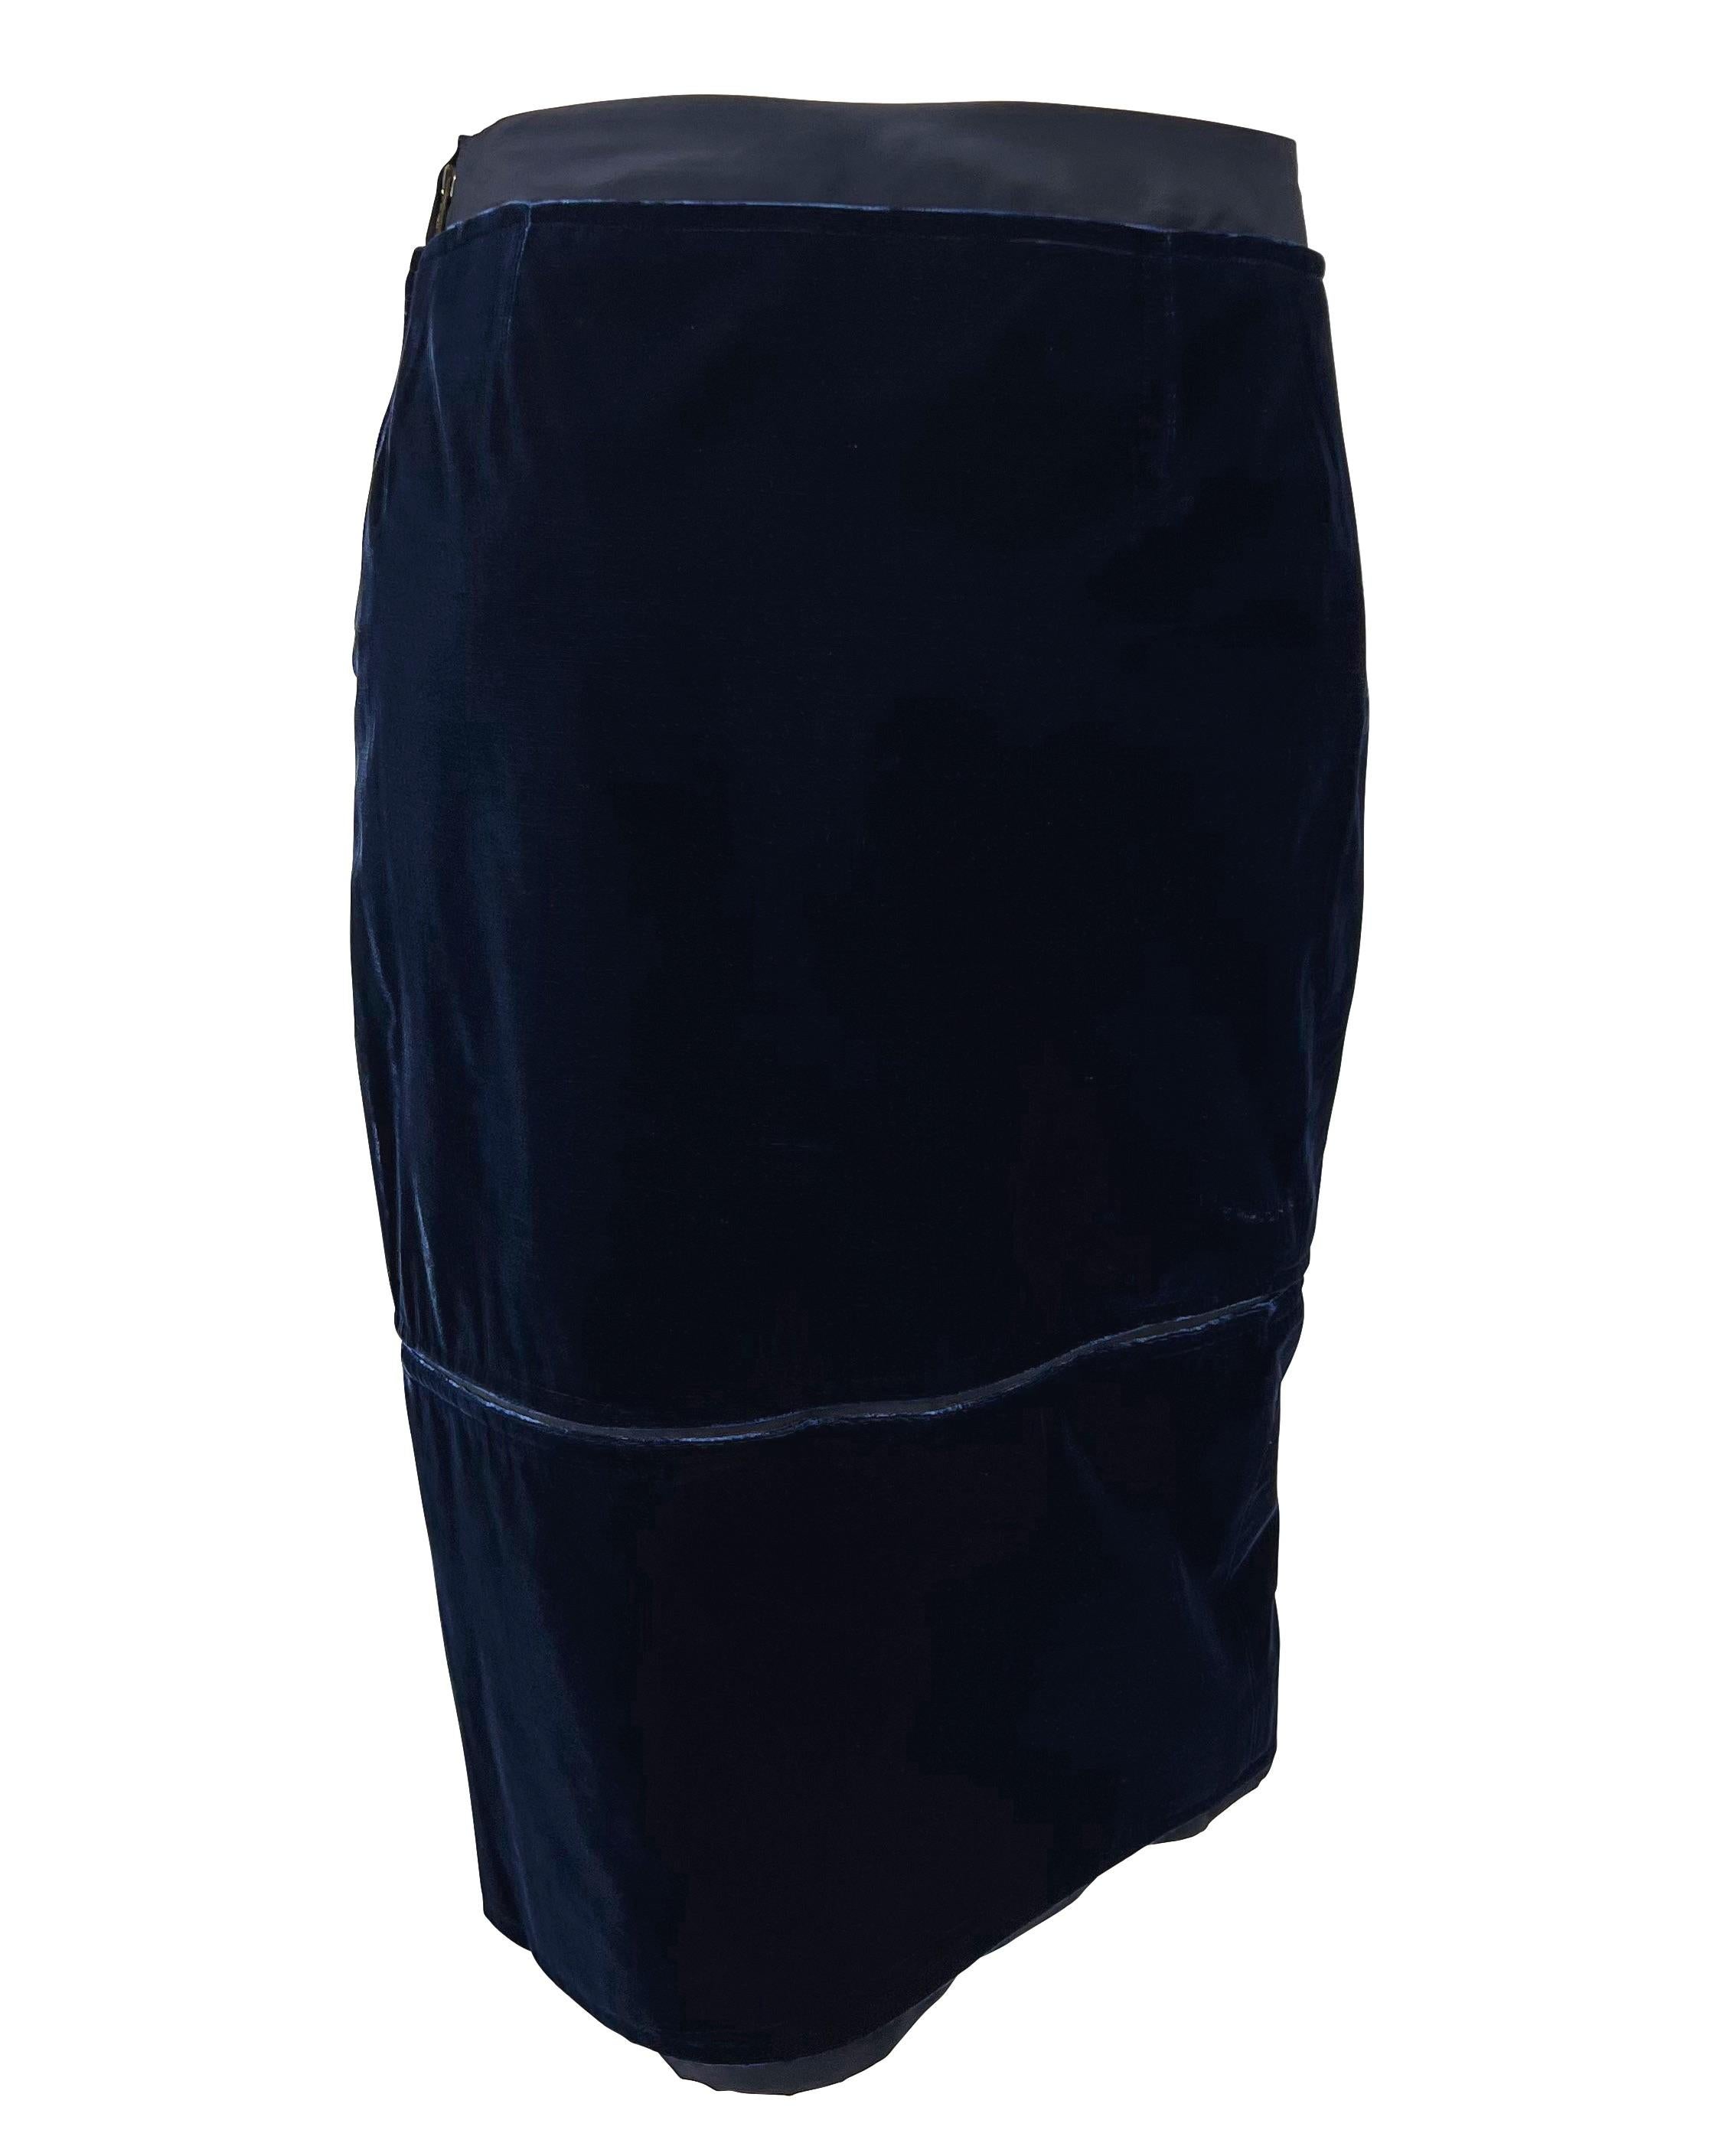 F/W 2002 Yves Saint Laurent by Tom Ford Blue Velvet Panel Pencil Skirt For Sale 1